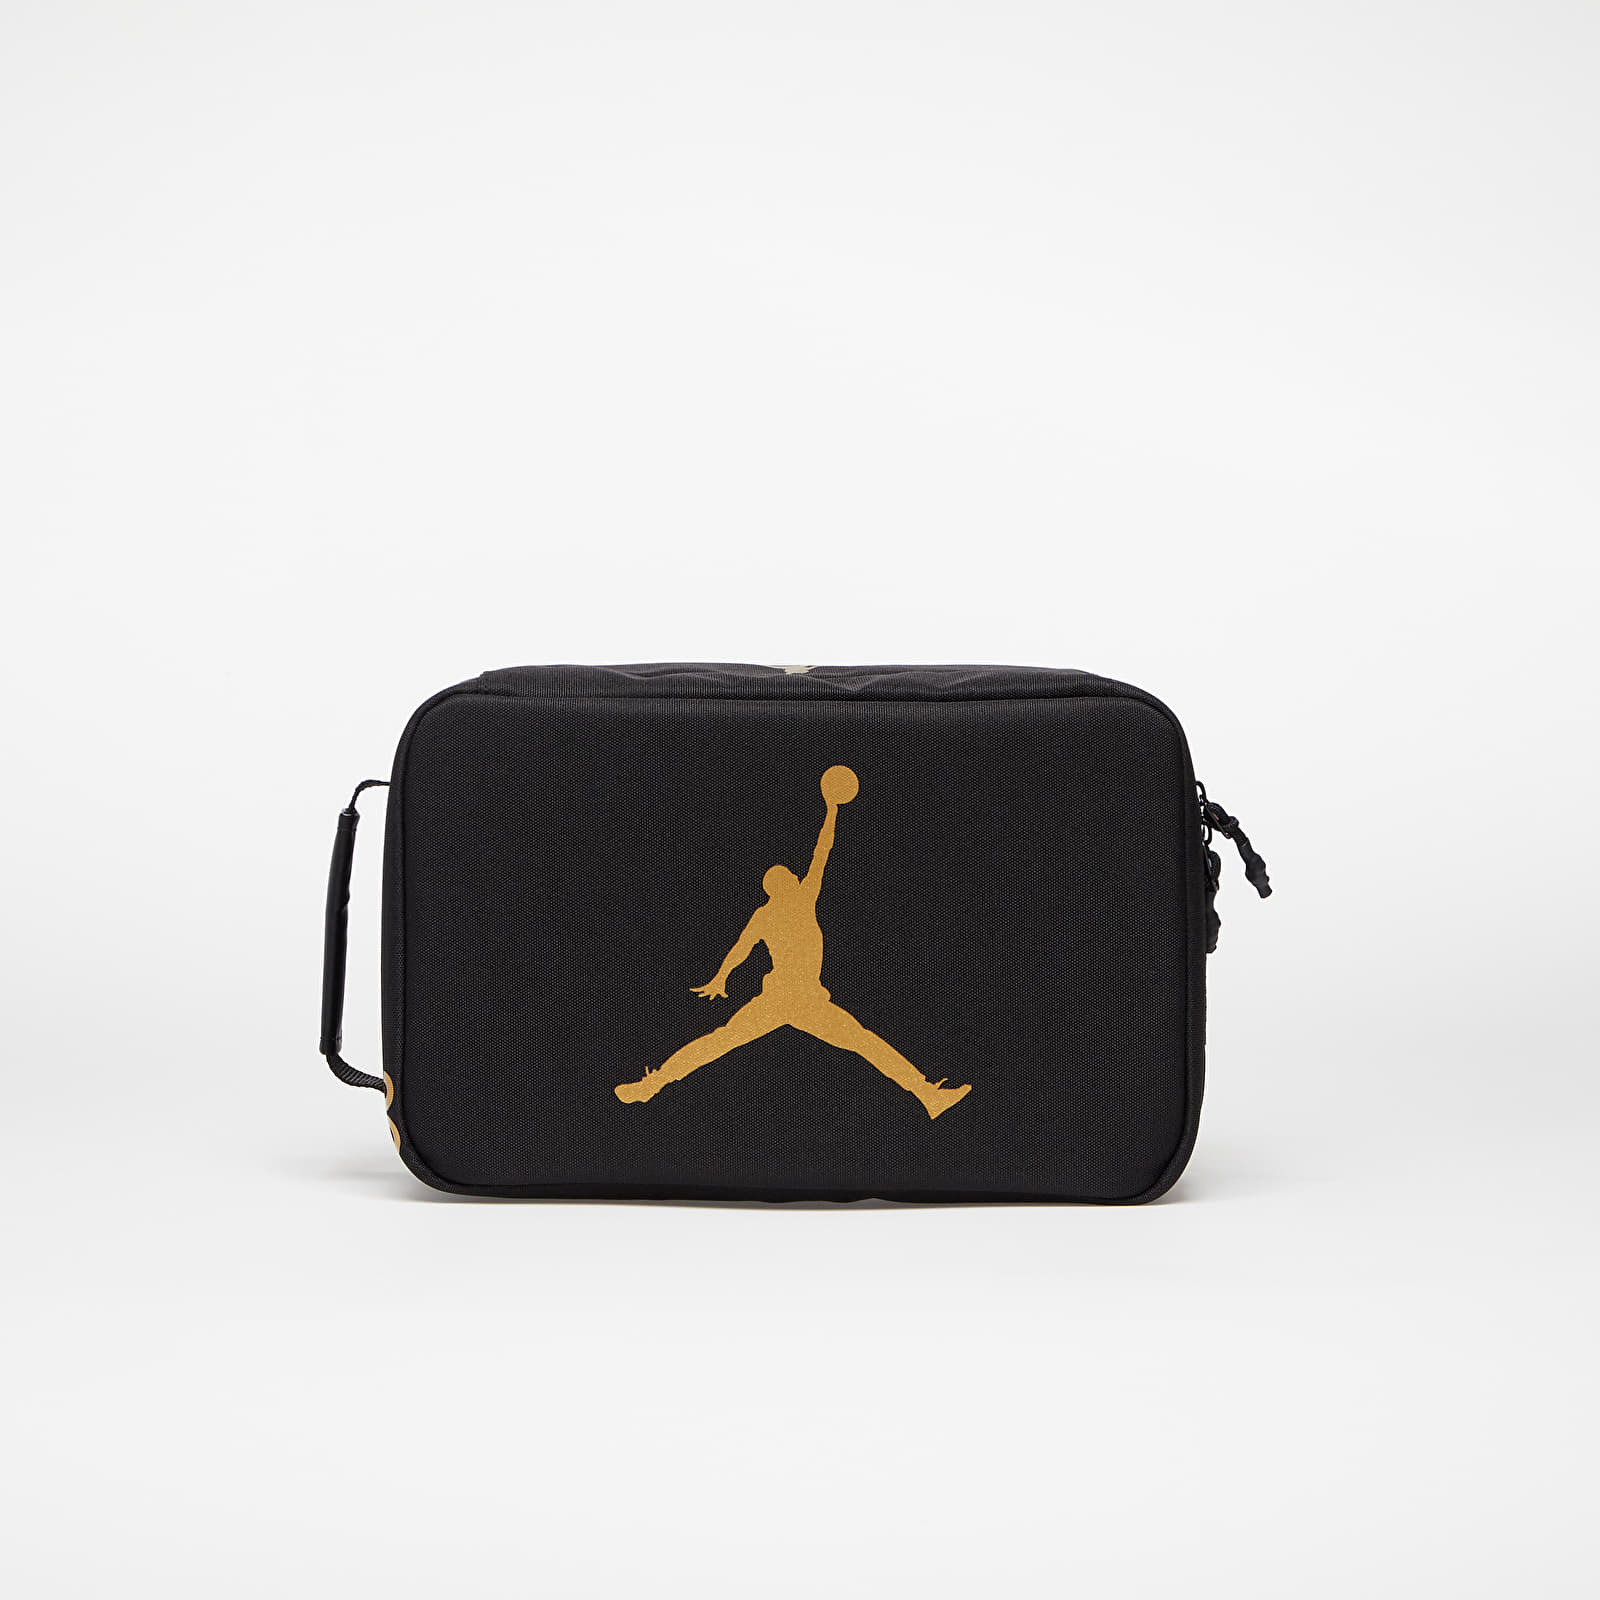 Jordan - jan the shoe box black/ gold